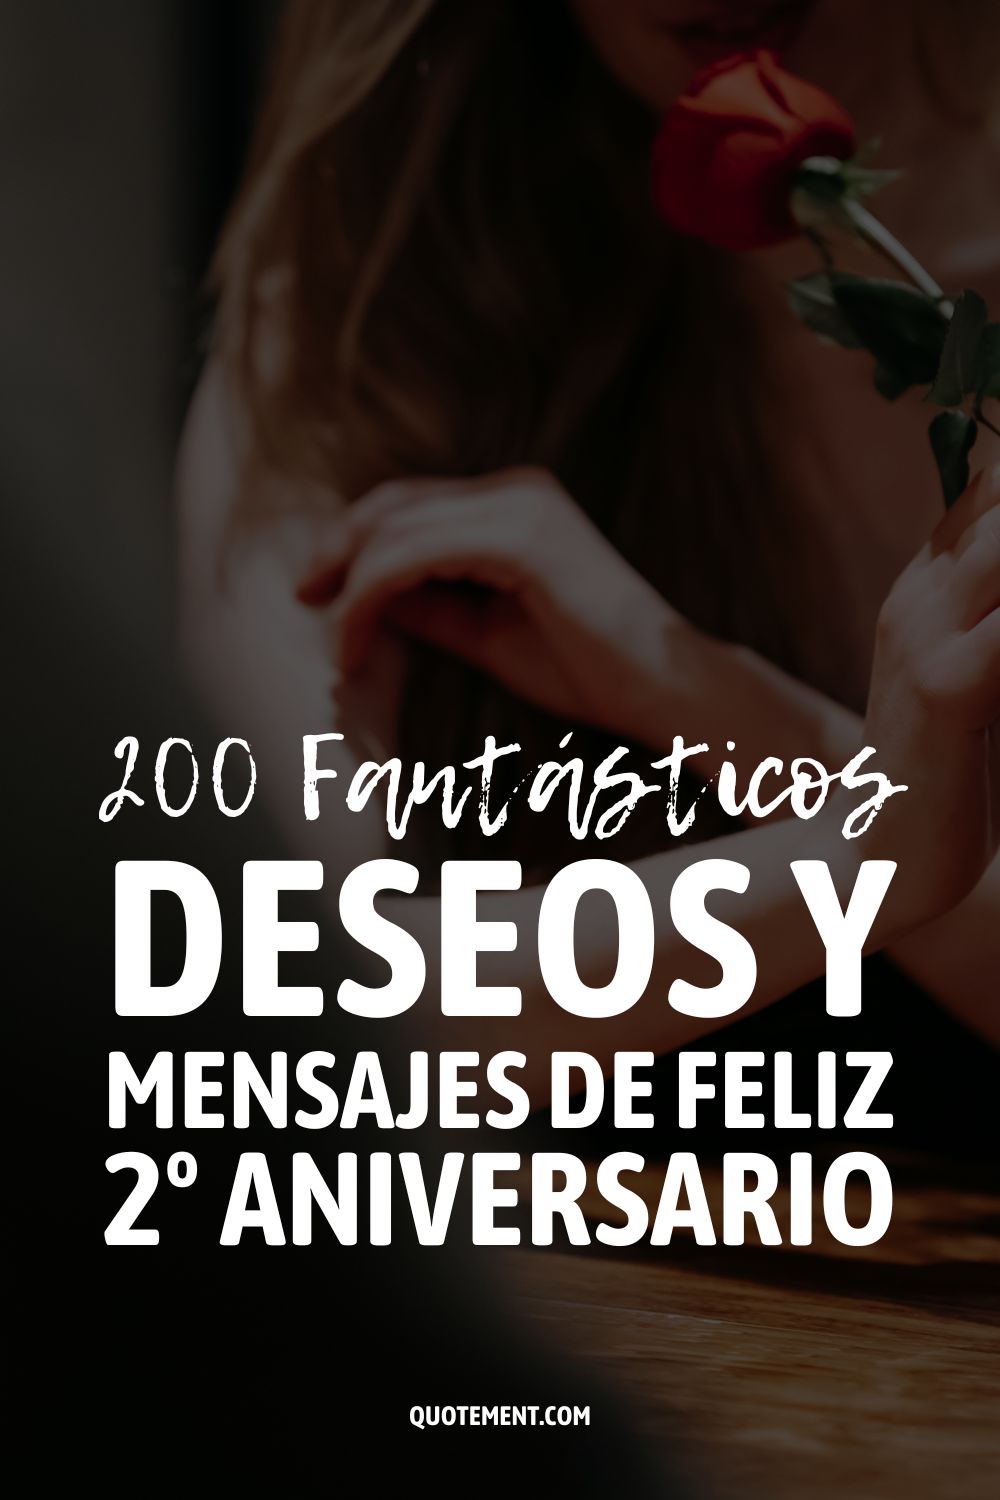 200 Fantásticos Deseos y Mensajes de Feliz 2º Aniversario